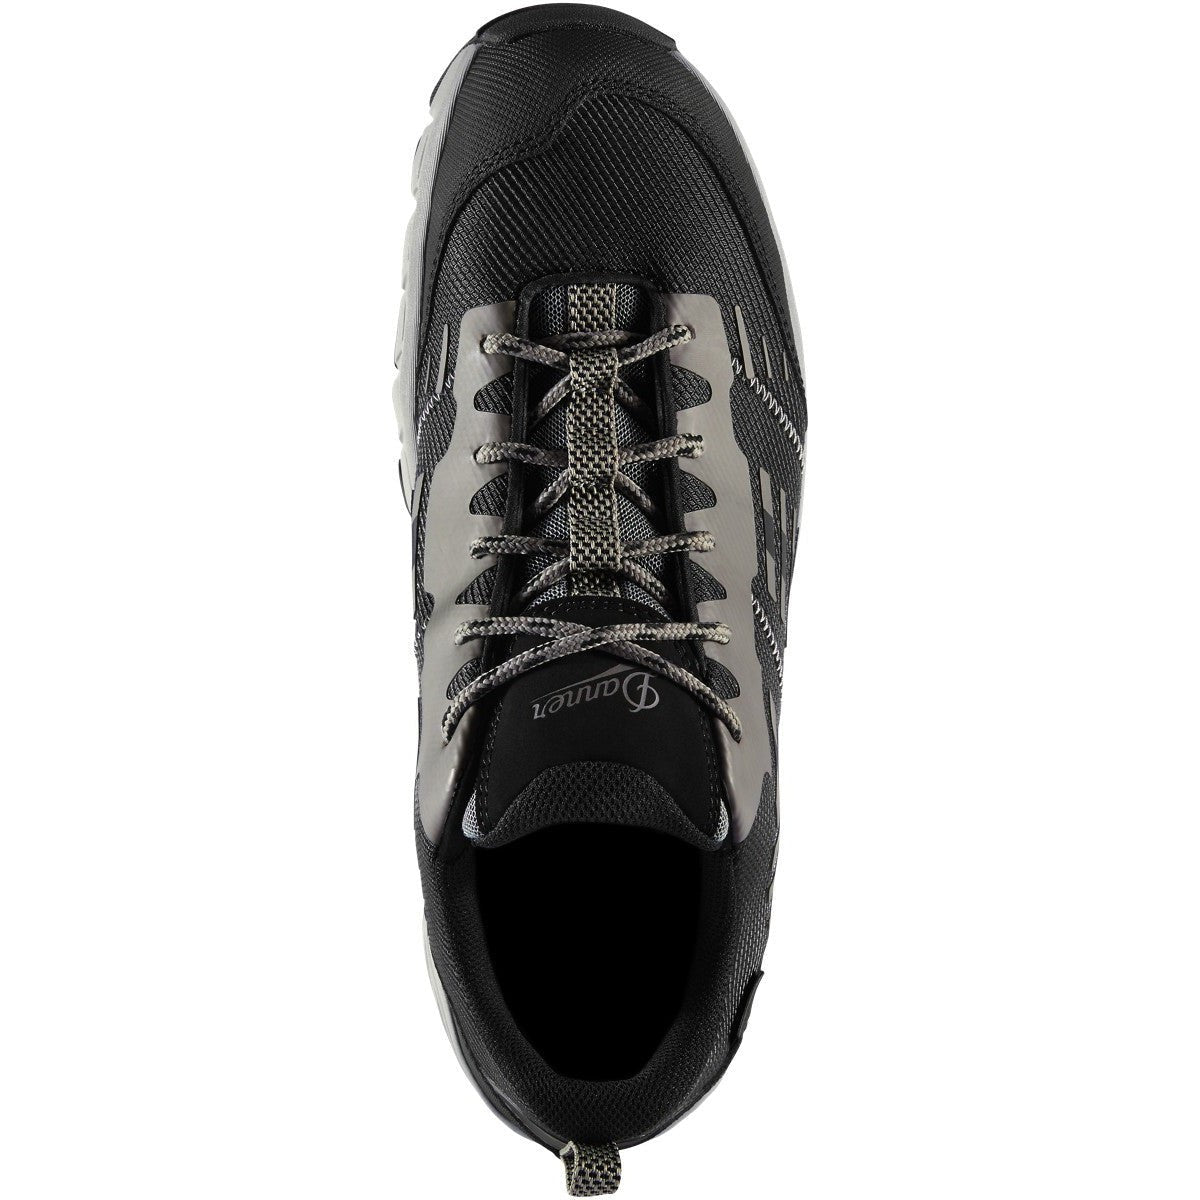 Danner Men's Run Time ESD Composite Toe Work Shoe - Black - 12372  - Overlook Boots